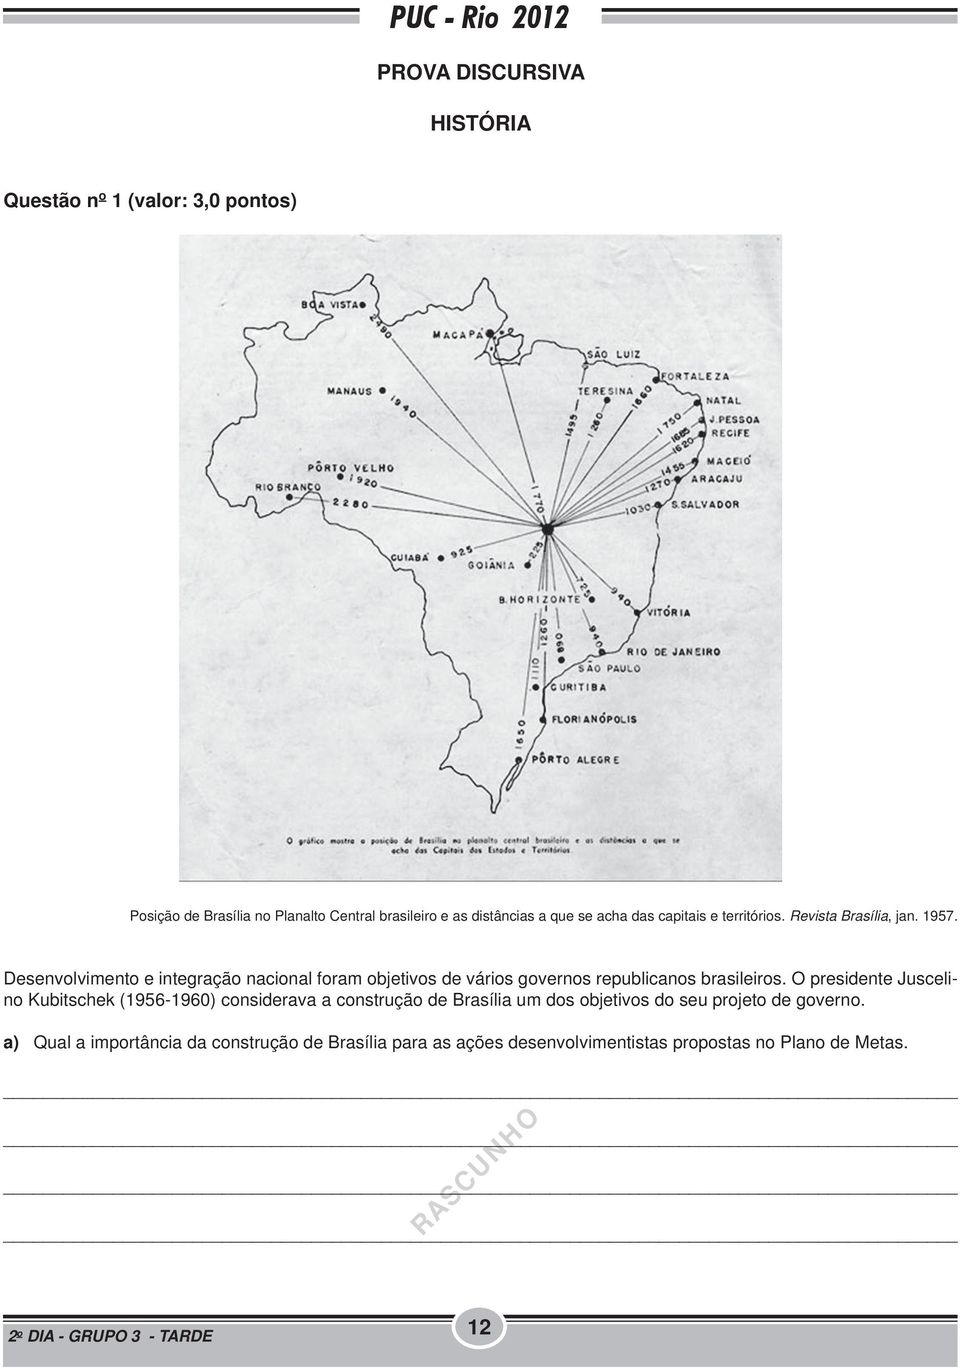 Desenvolvimento e integração nacional foram objetivos de vários governos republicanos brasileiros.